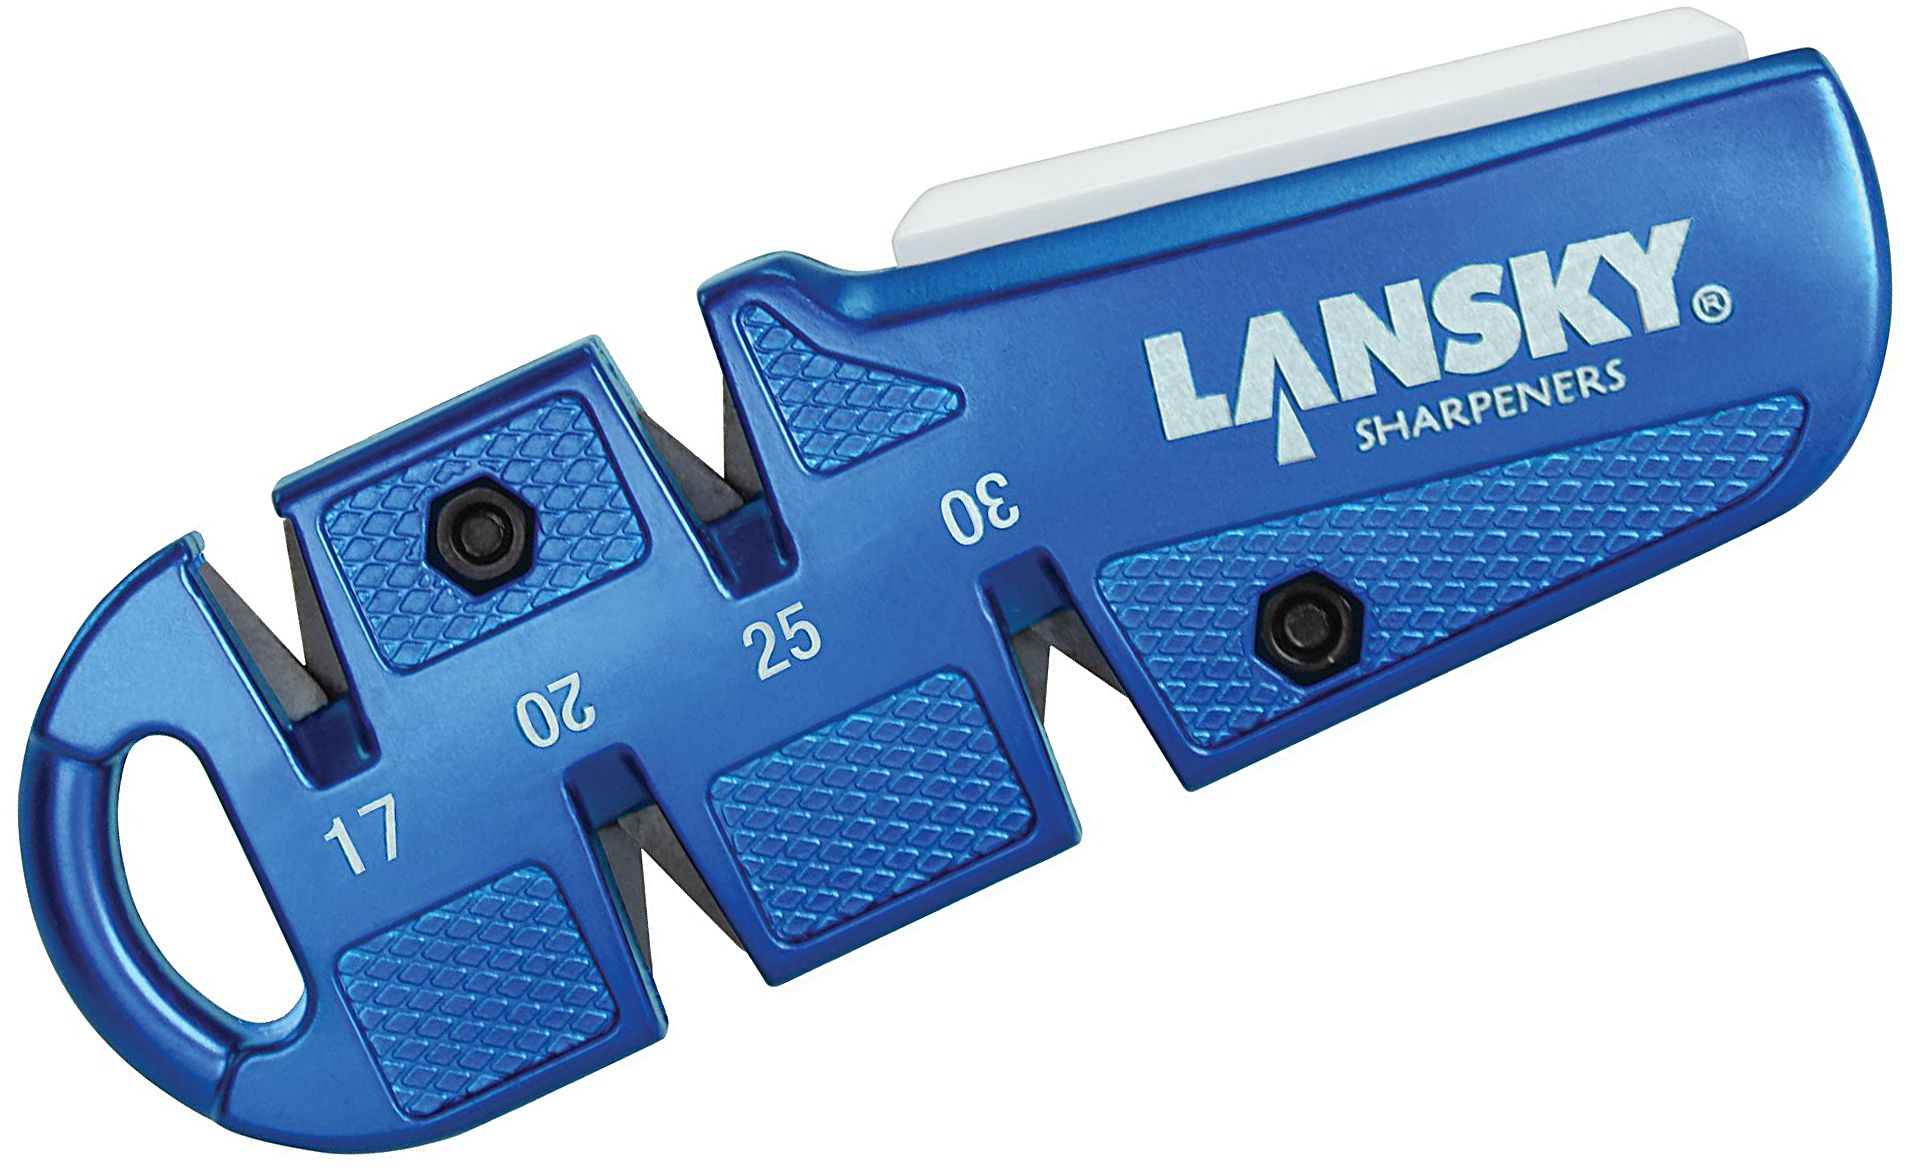 Buy Lansky Sharpeners Online